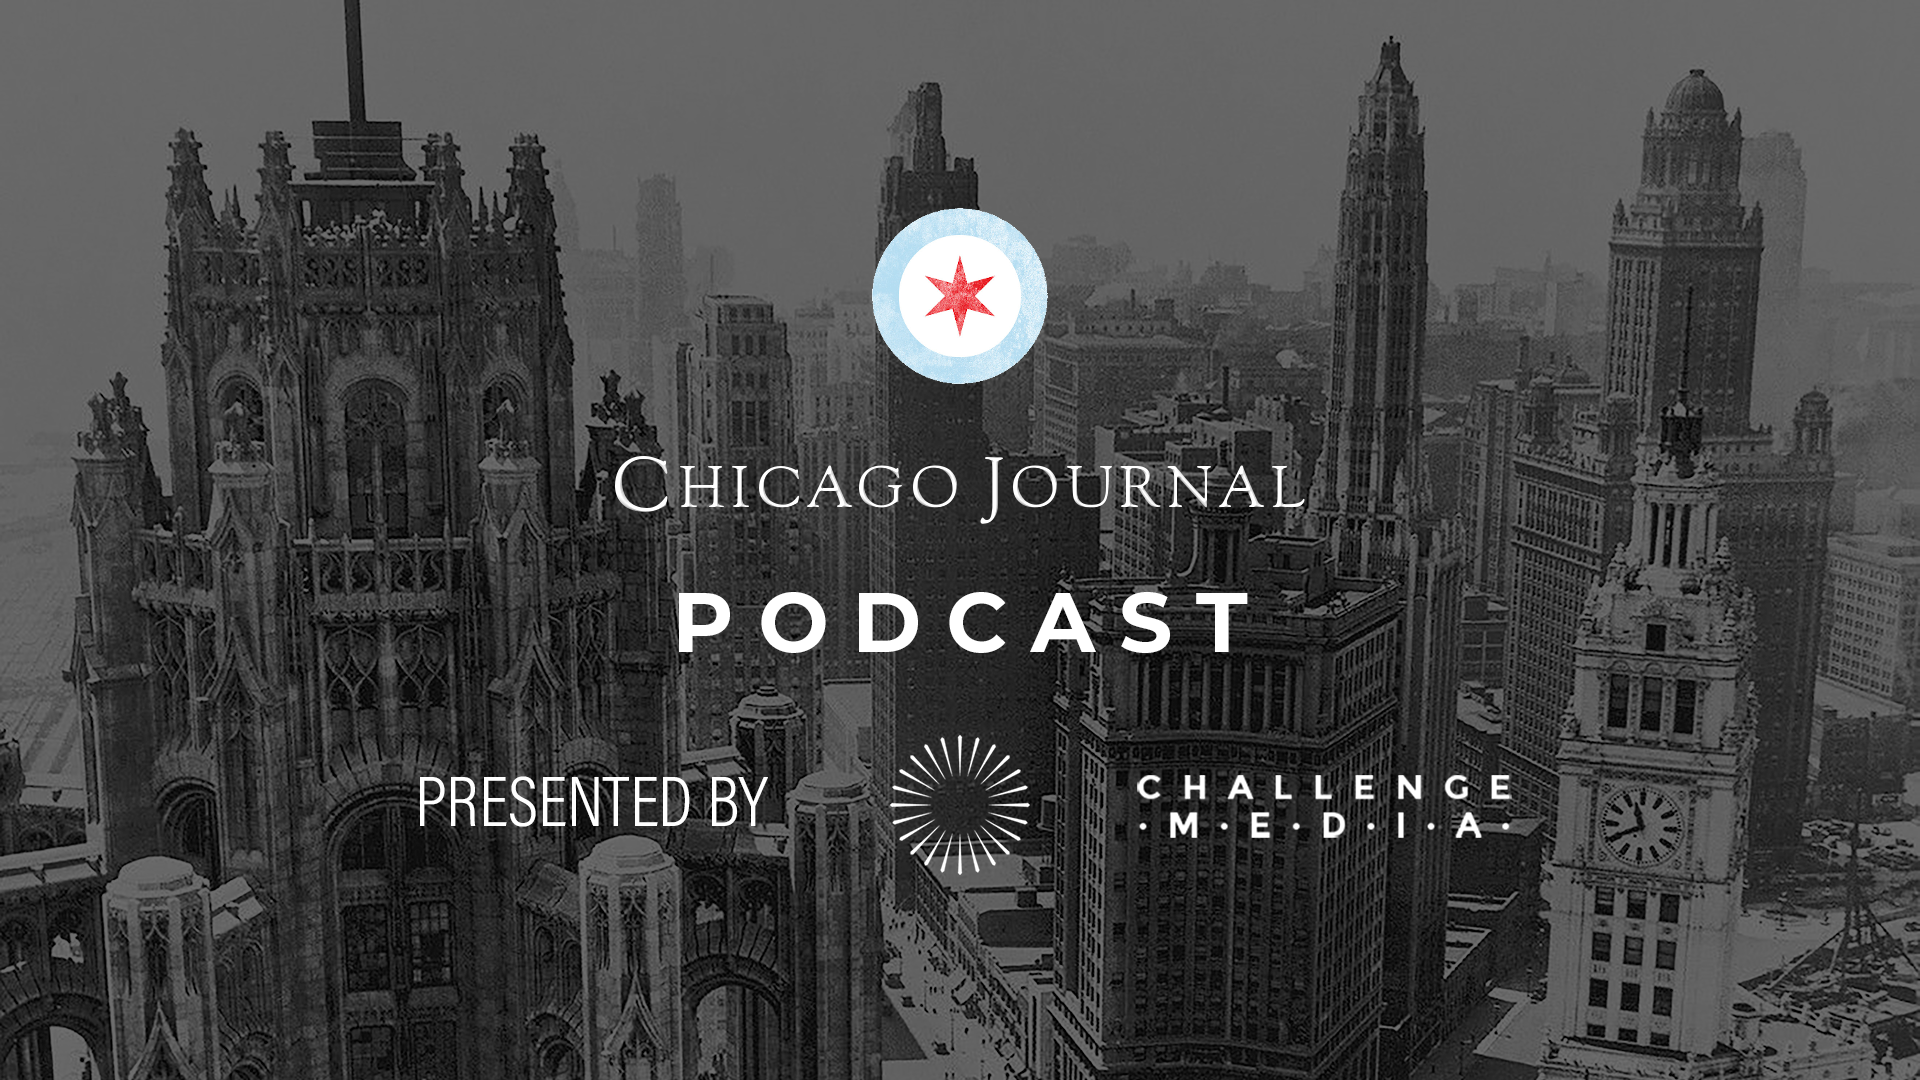 Chicago Journal Podcast (Teaser)